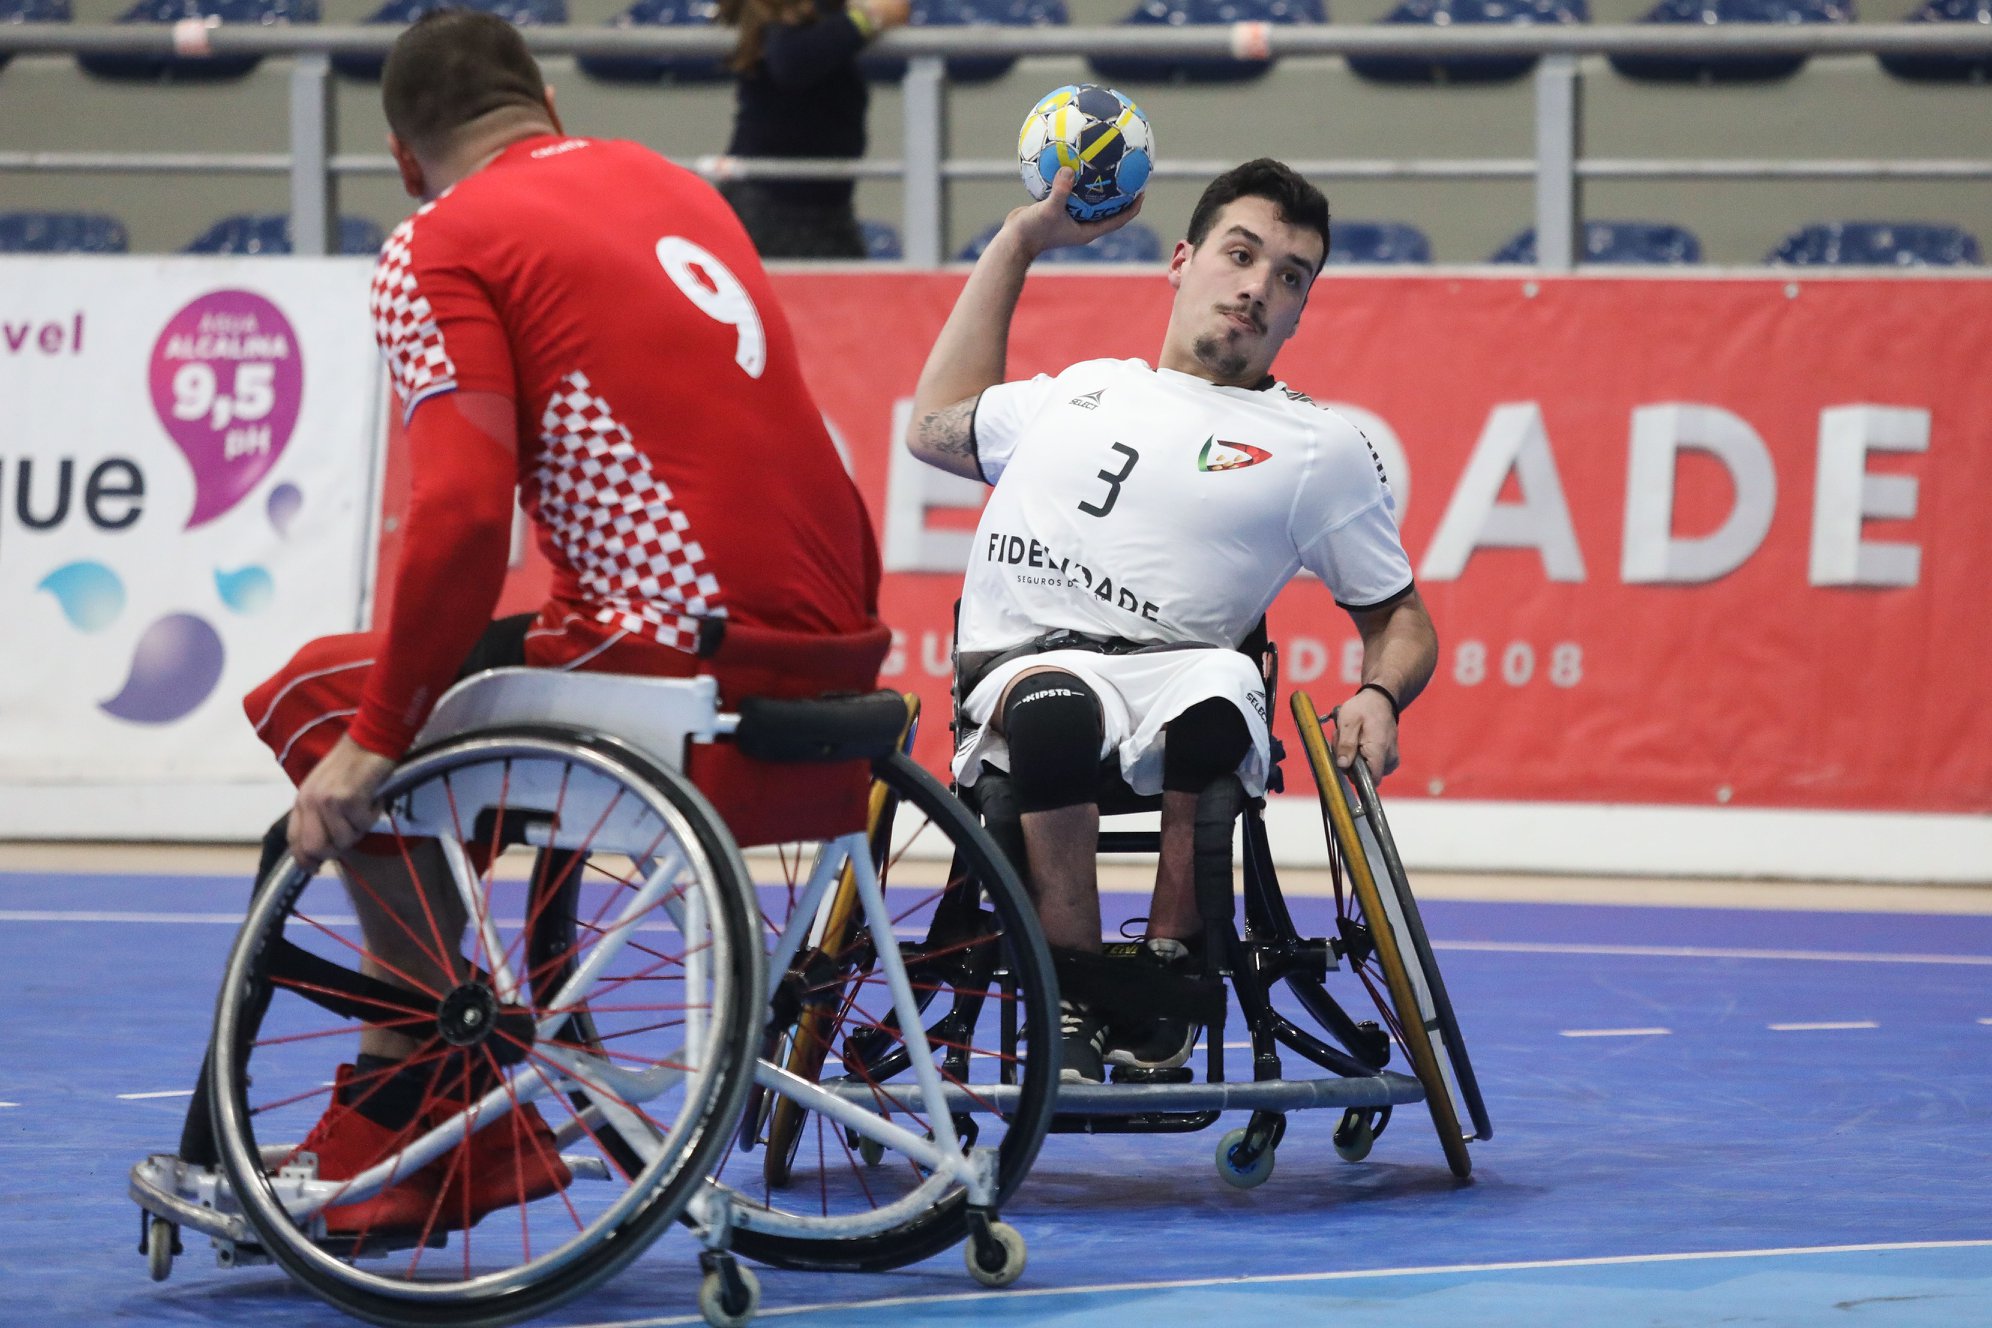 No andebol em cadeira de rodas Portugal é 'rei' da Europa e do Mundo. O  sonho, agora, são os Jogos Paralímpicos - Jogos Paralimpicos - SAPO Desporto